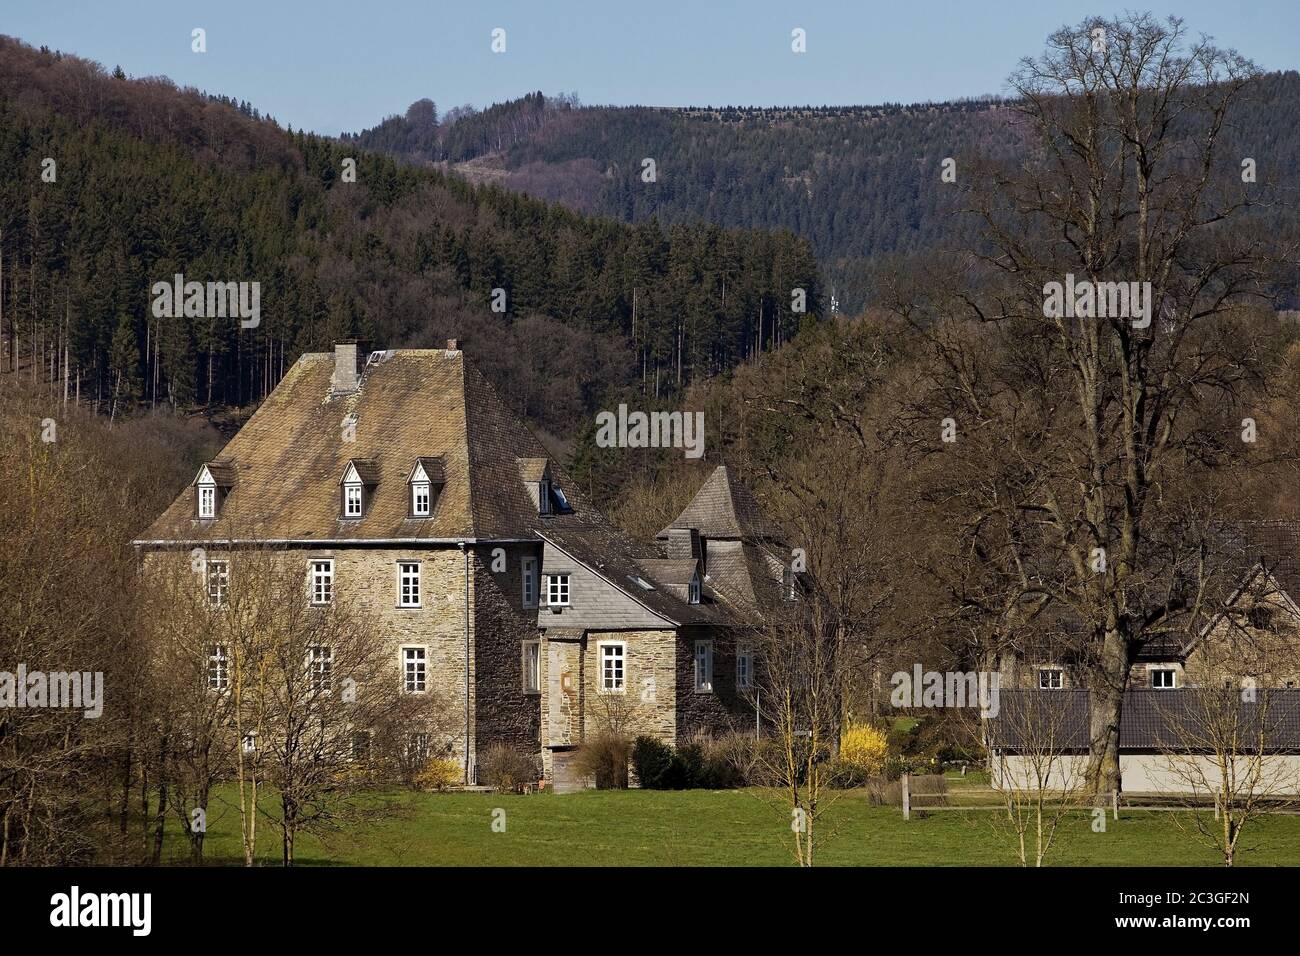 Wenne House, Eslohe, Sauerland, North Rhine-Westphalia, Germany, Europe Stock Photo